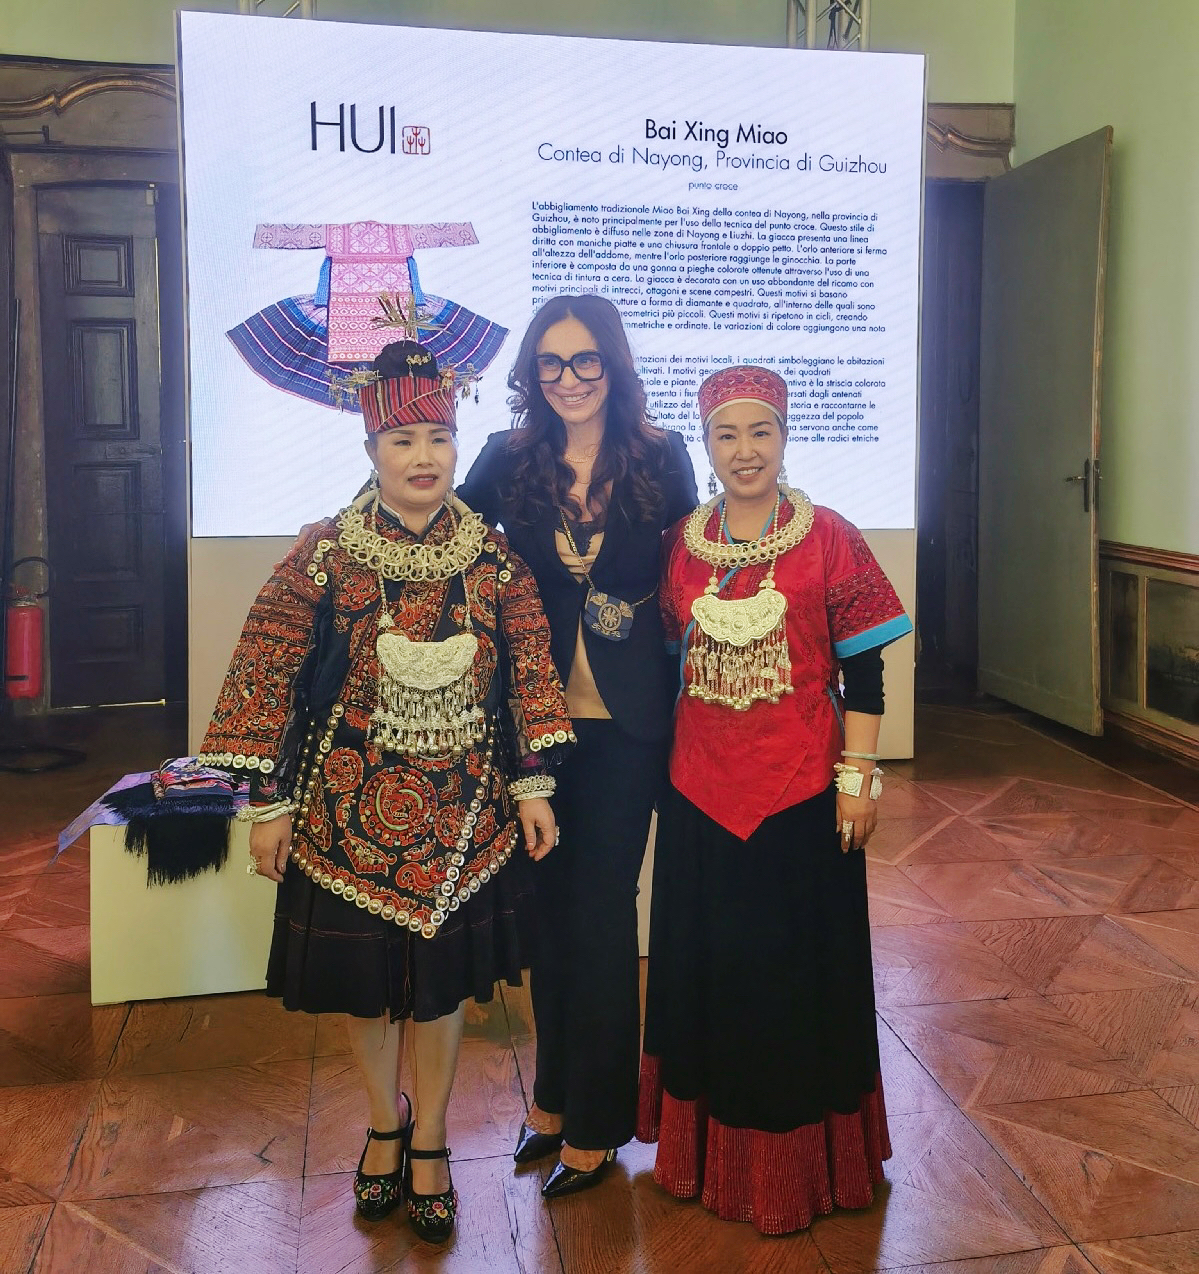 Η Μπάρμπαρα Ματσάλι, σύμβουλος τουρισμού, μόδας και μάρκετινγκ της Λομβαρδίας, ποζάρει με δύο κεντήματα από την επαρχία Γκουιτζόου σε μια έκθεση εμπνευσμένη από τα κεντήματα Μιάο του κινέζου σχεδιαστή Τζάο Χουιτζόου την Κυριακή κατά τη διάρκεια της Εβδομάδας Μόδας του Μιλάνου. [Φωτογραφία από chinadaily.com.cn]